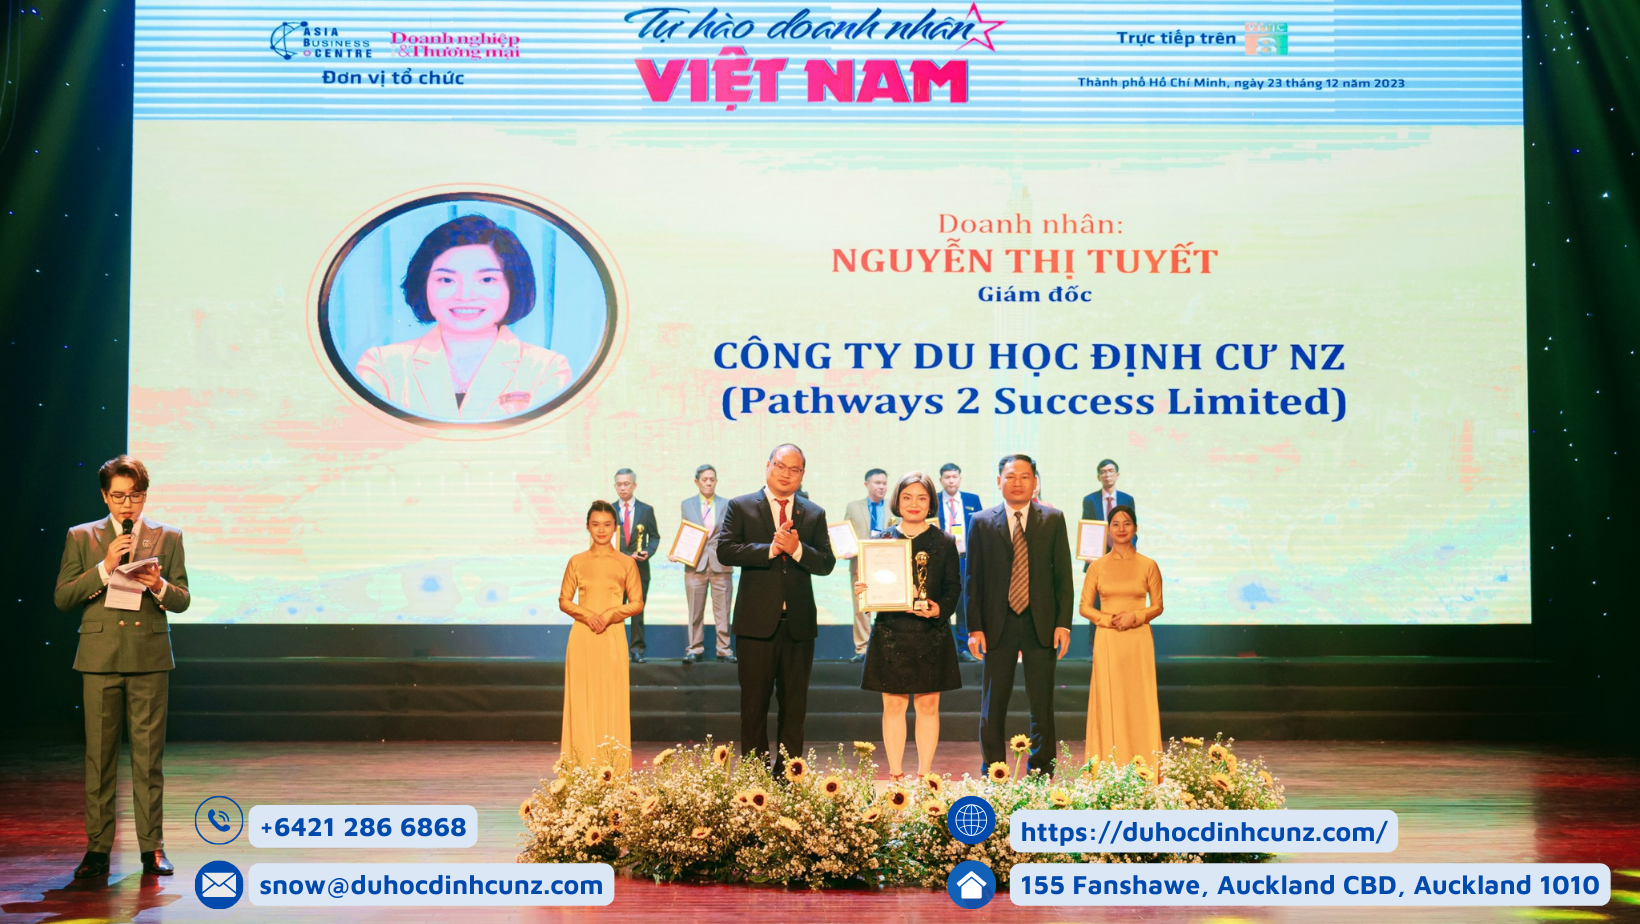 Doanh nhân Snow Nguyễn – CEO của công ty Du học Định cư NZ nhận danh hiệu Doanh nhân Việt Nam Xuất sắc năm 2023